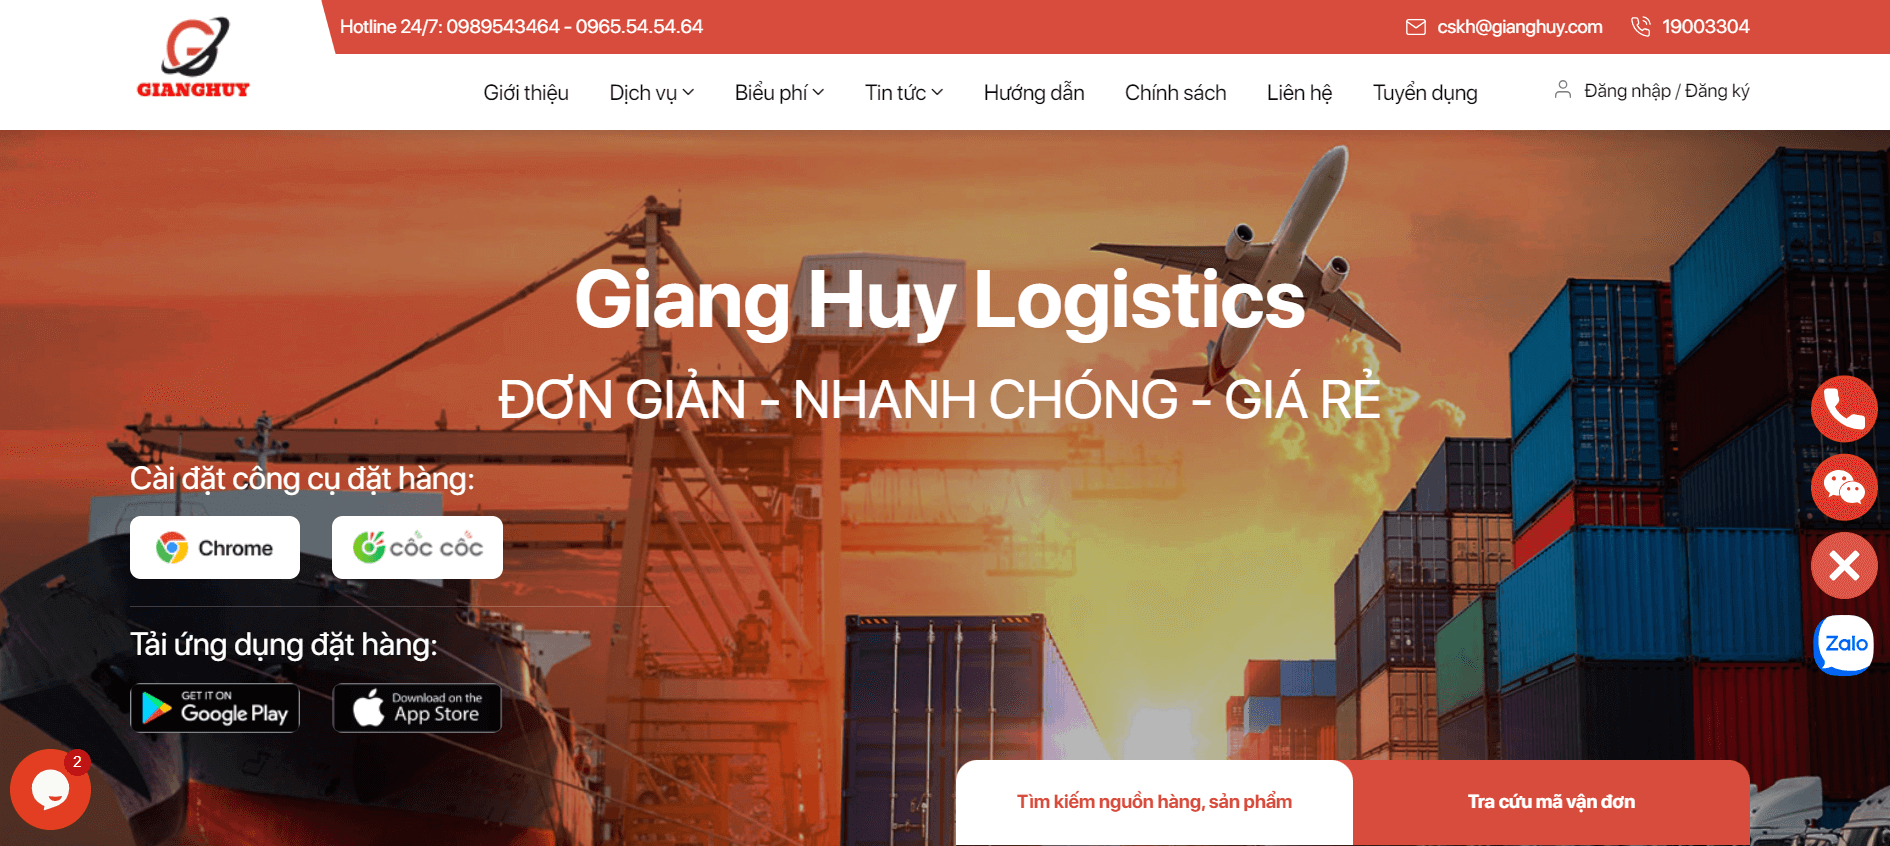 Thiết kế website nhập hàng Trung Quốc cho khách hàng Giang Huy